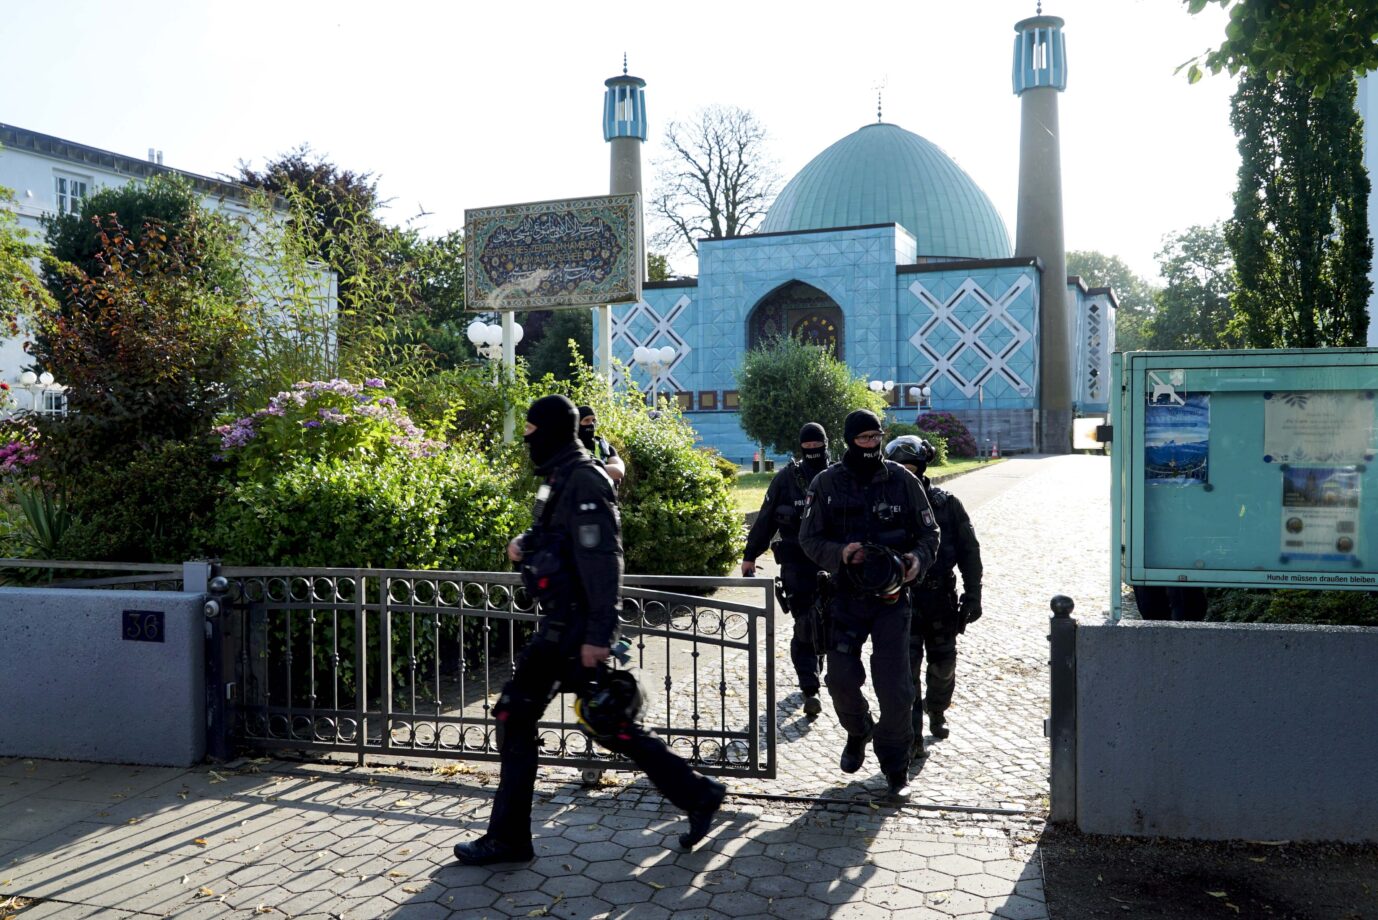 Innenministerin Nancy Faeser hat am Mittwoch das Islamische Zentrum Hamburg (IZH) verboten. Die Vorwürfe gegen den Verein, der von der iranischen Regierung gesteuert wird, waren lange bekannt.